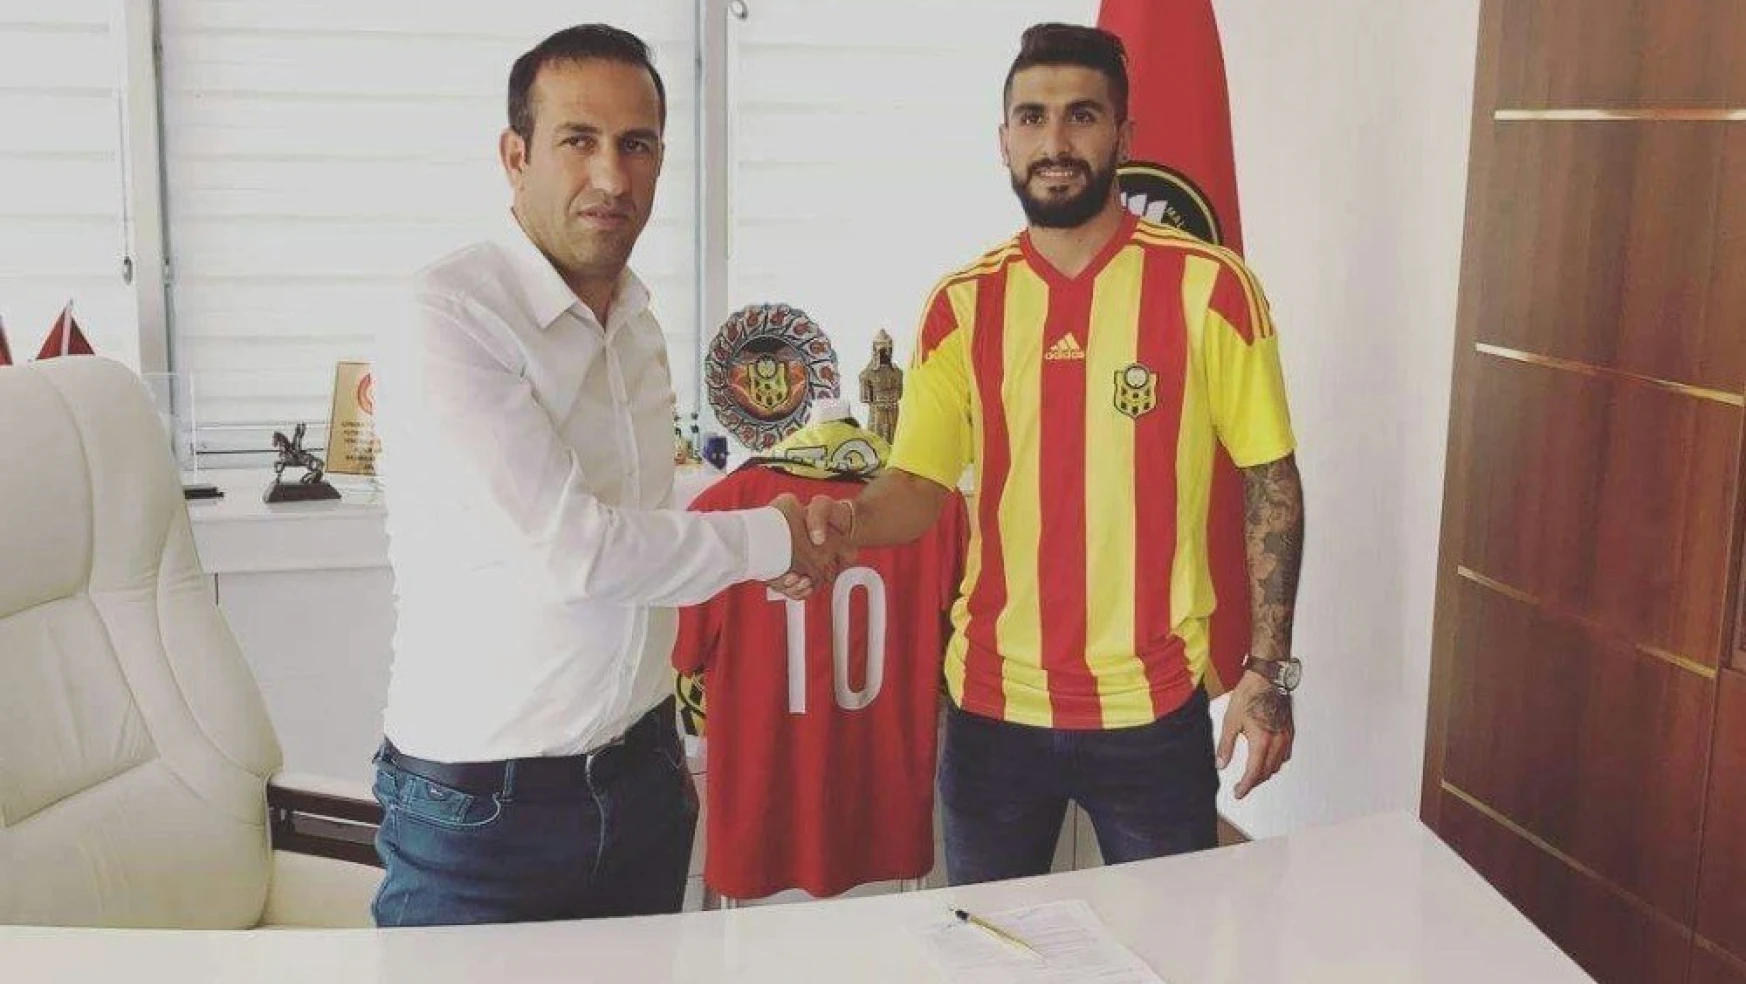 Emanuel Dening Yeni Malatyaspor'da sözleşme imzaladı
